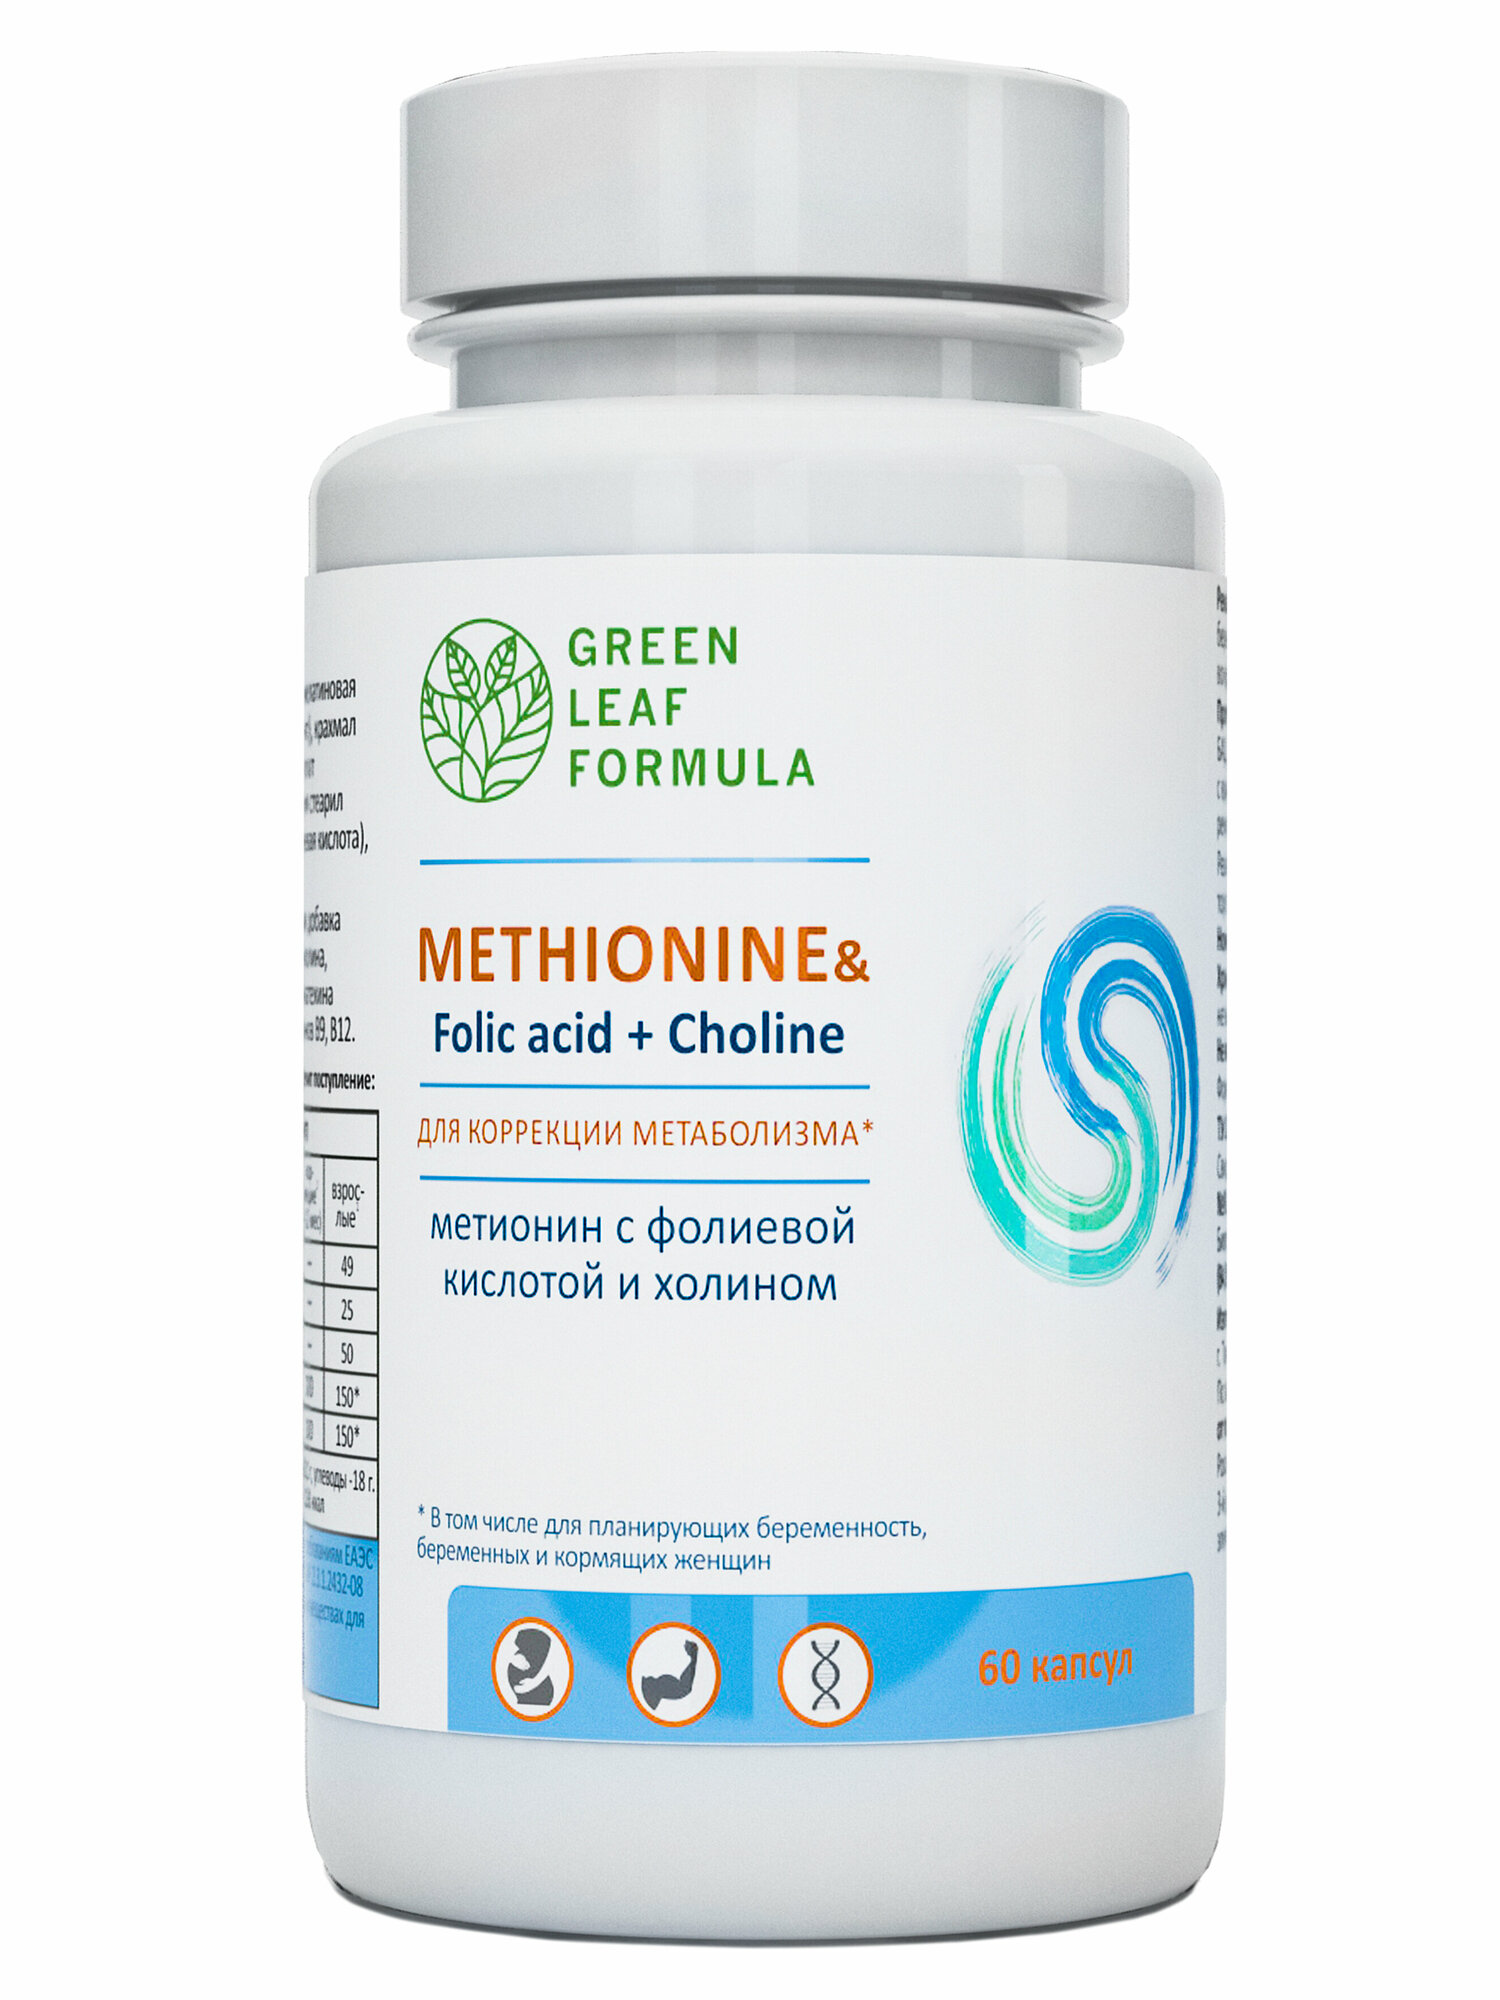 Метионин аминокислота, фолиевая кислота, холин, витамины для беременных и кормящих женщин, витамины для спорта